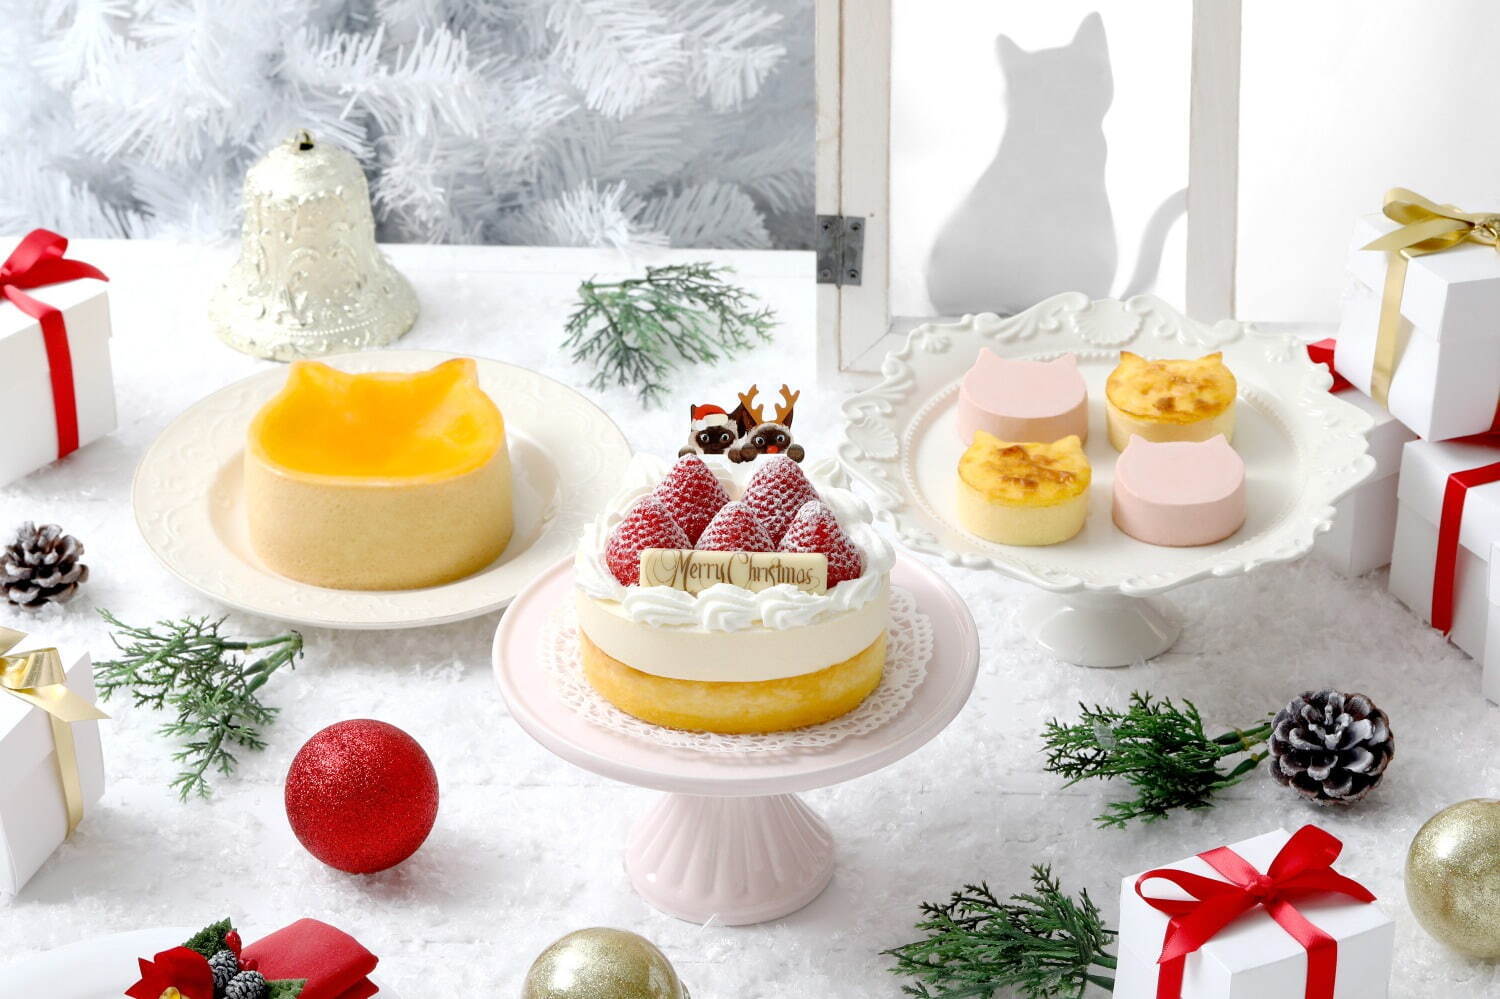 ねこねこチーズケーキ21年クリスマス、雪のようなクリームのせ2層仕立ての“ネコ型”チーズケーキ｜写真4